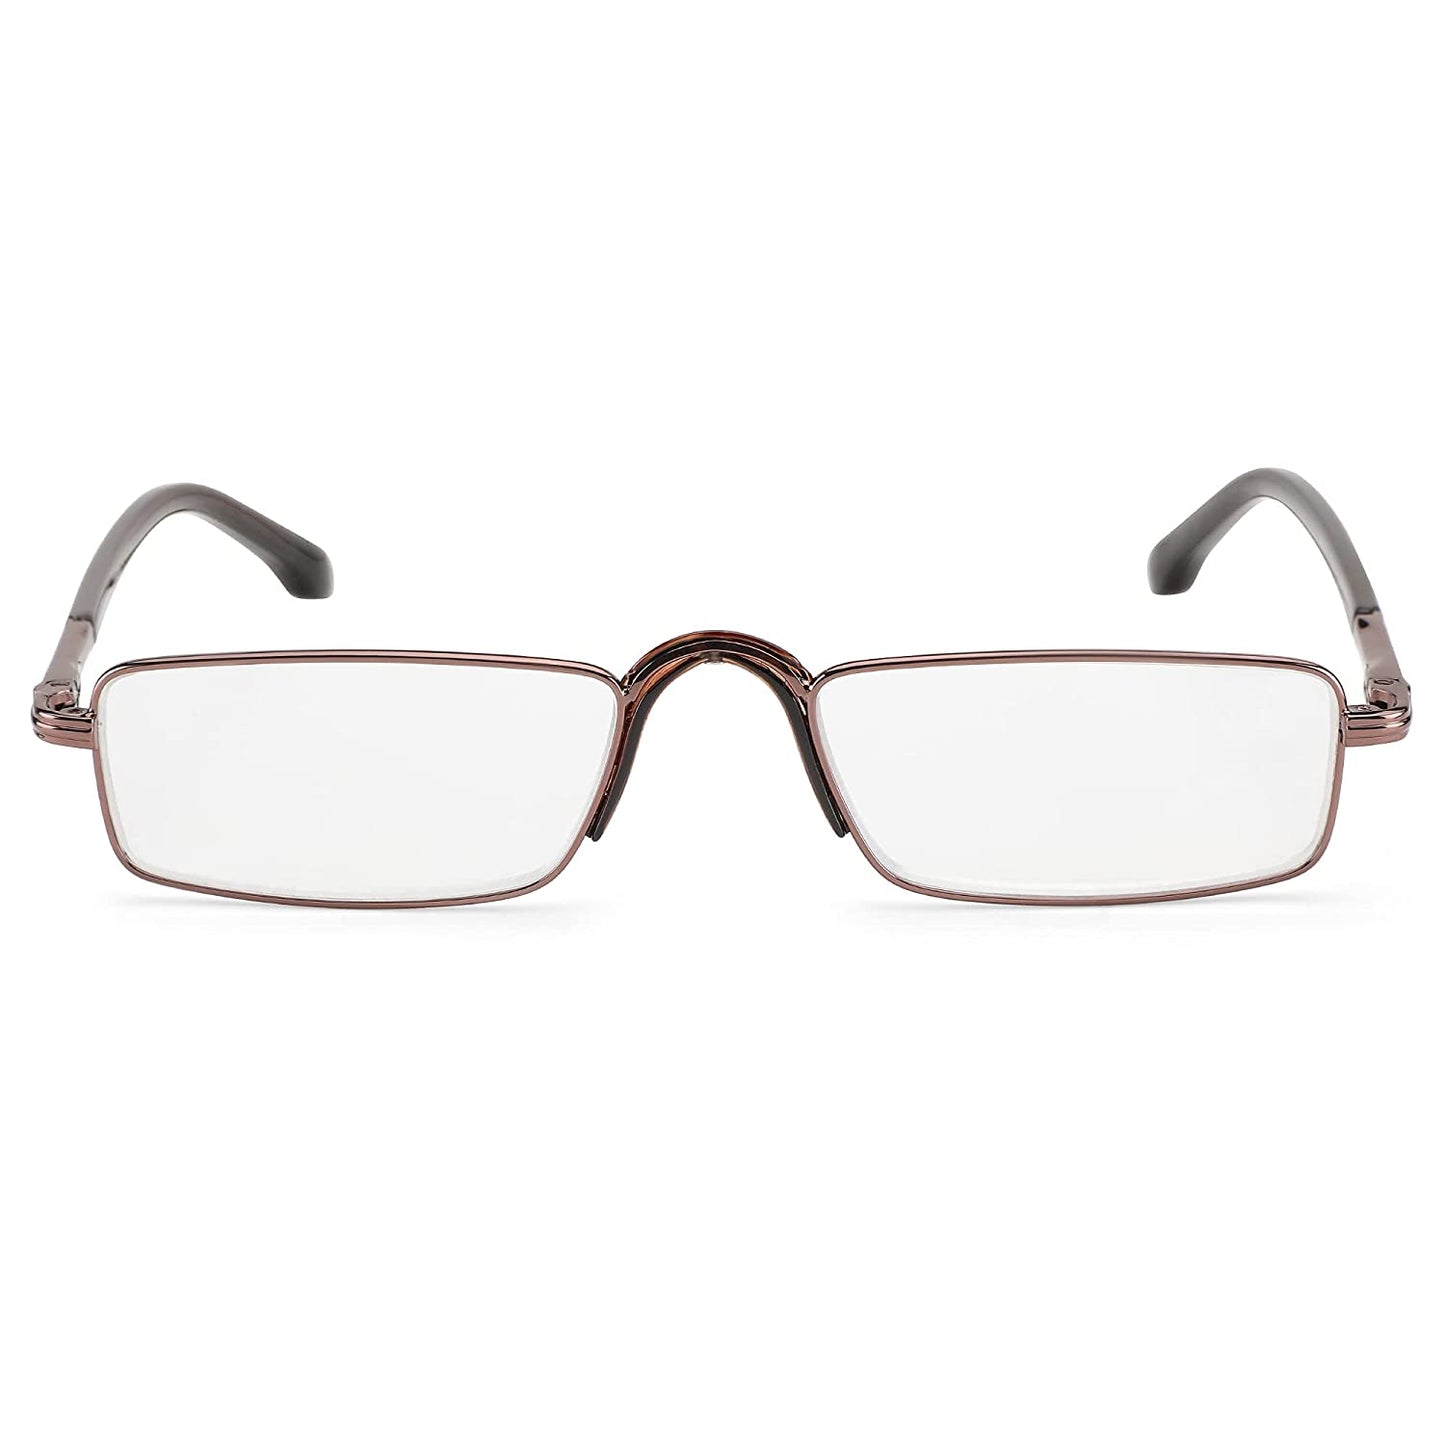 Premium Full Rim Reading Glasses with Fixed Nose Pad